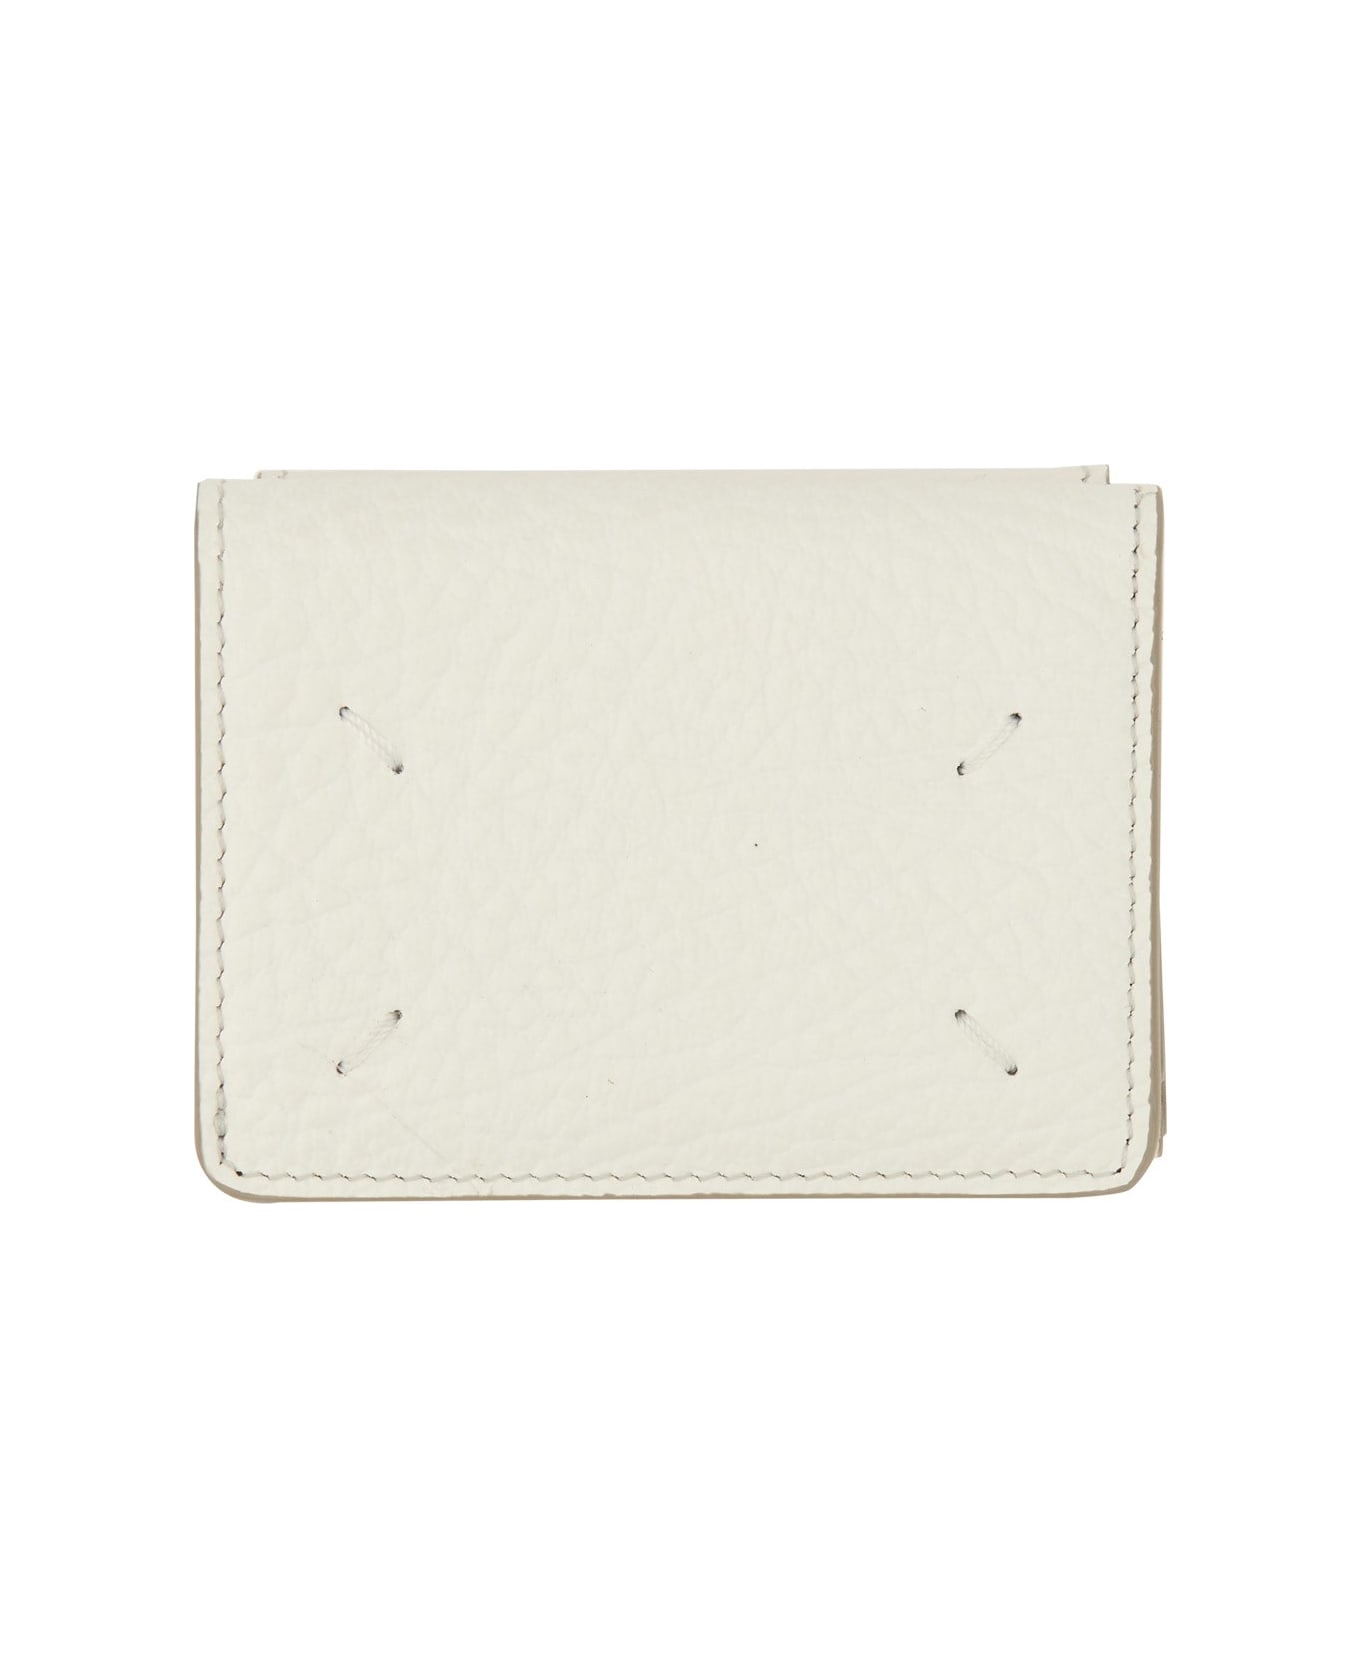 Maison Margiela Four Stitches Compact Wallet - BIANCO 財布